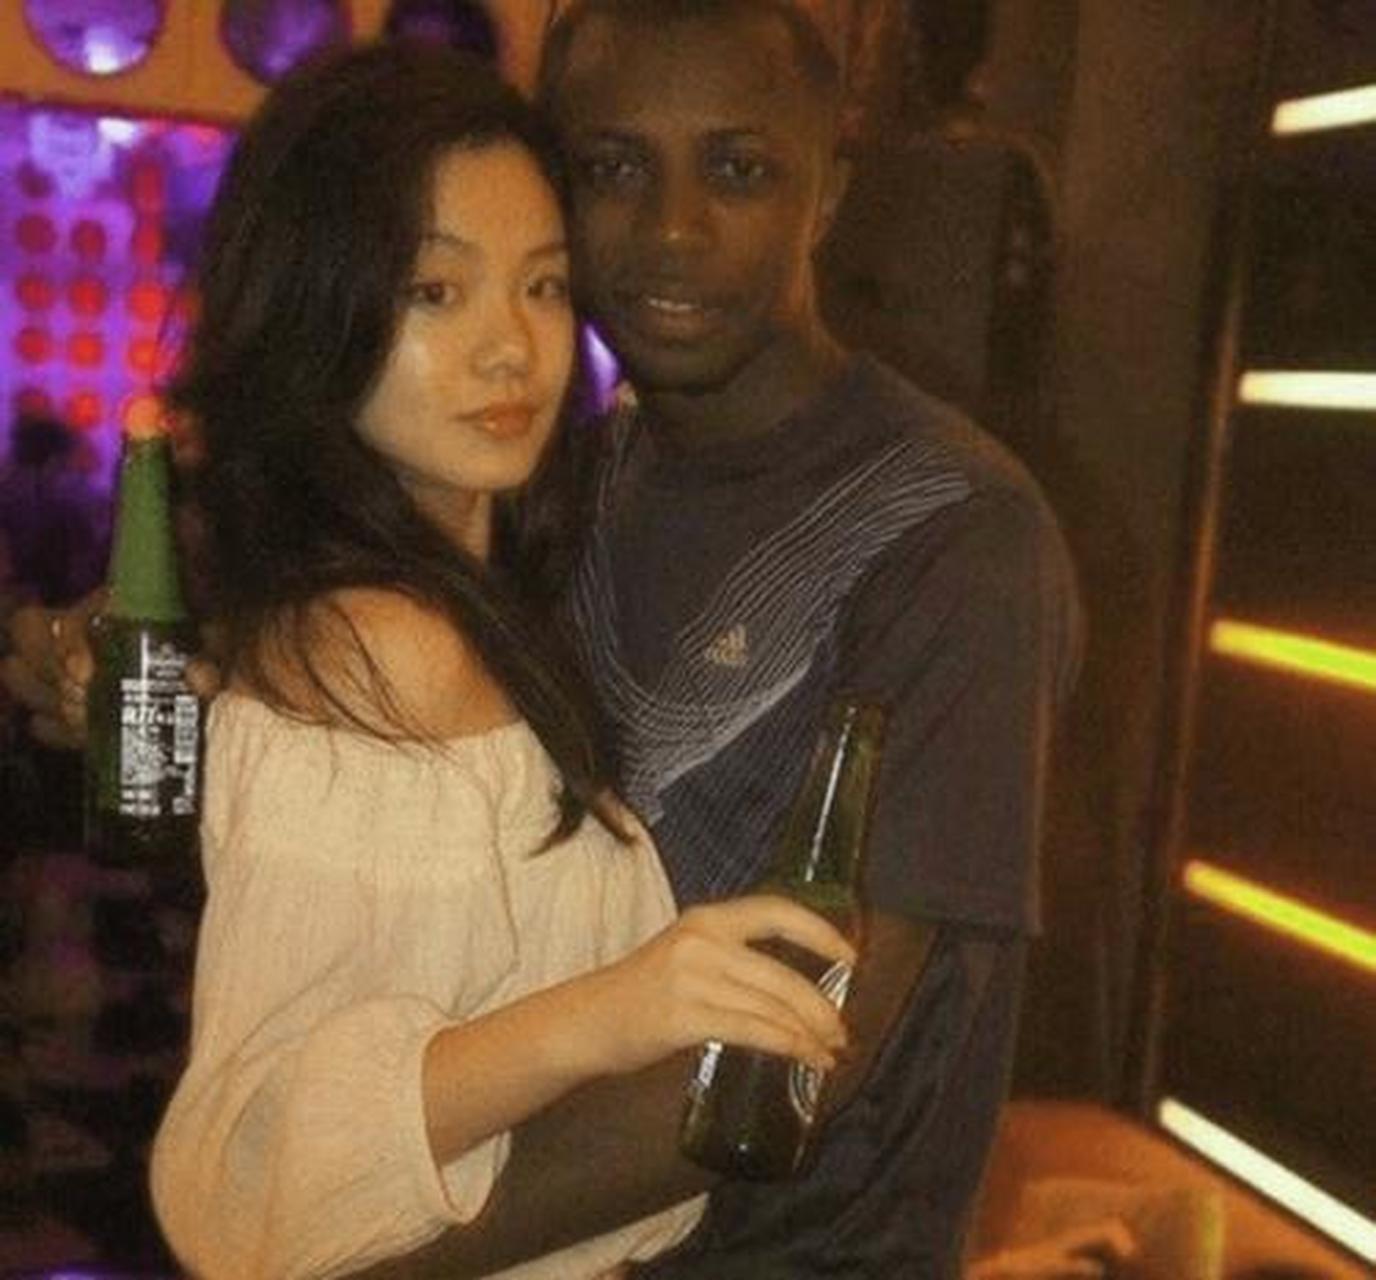 在这张照片中,一名黑人男子正跪地向一名中国女孩求婚,他低下头,准备